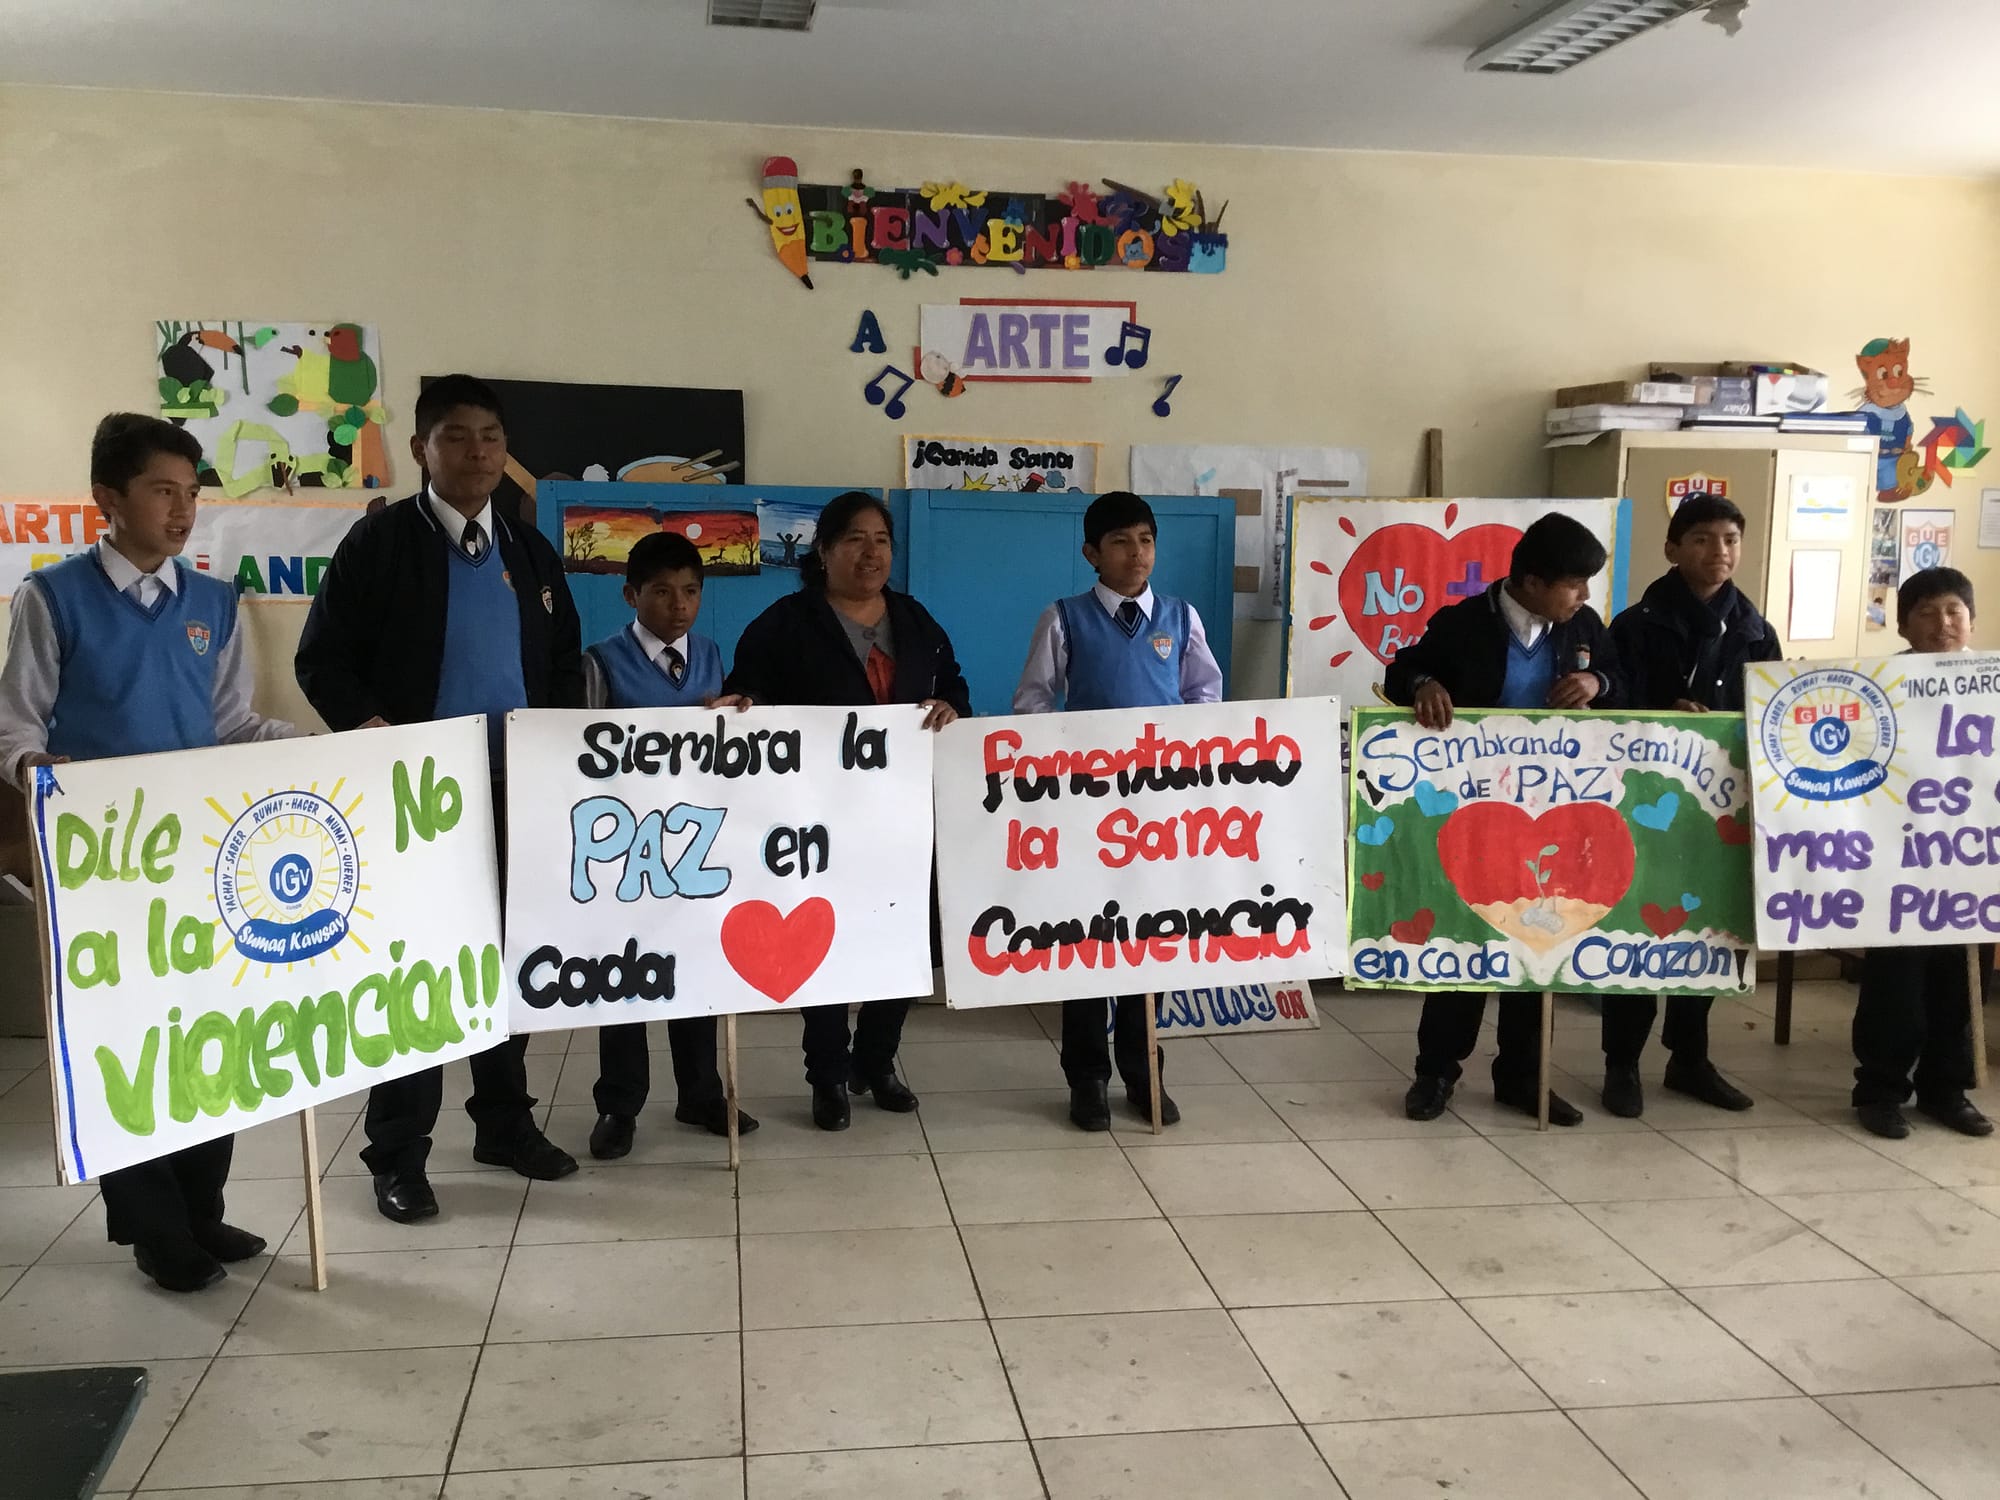 Studio: Il Programma di Educazione alla Pace introduce la cultura della pace nelle scuole peruviane